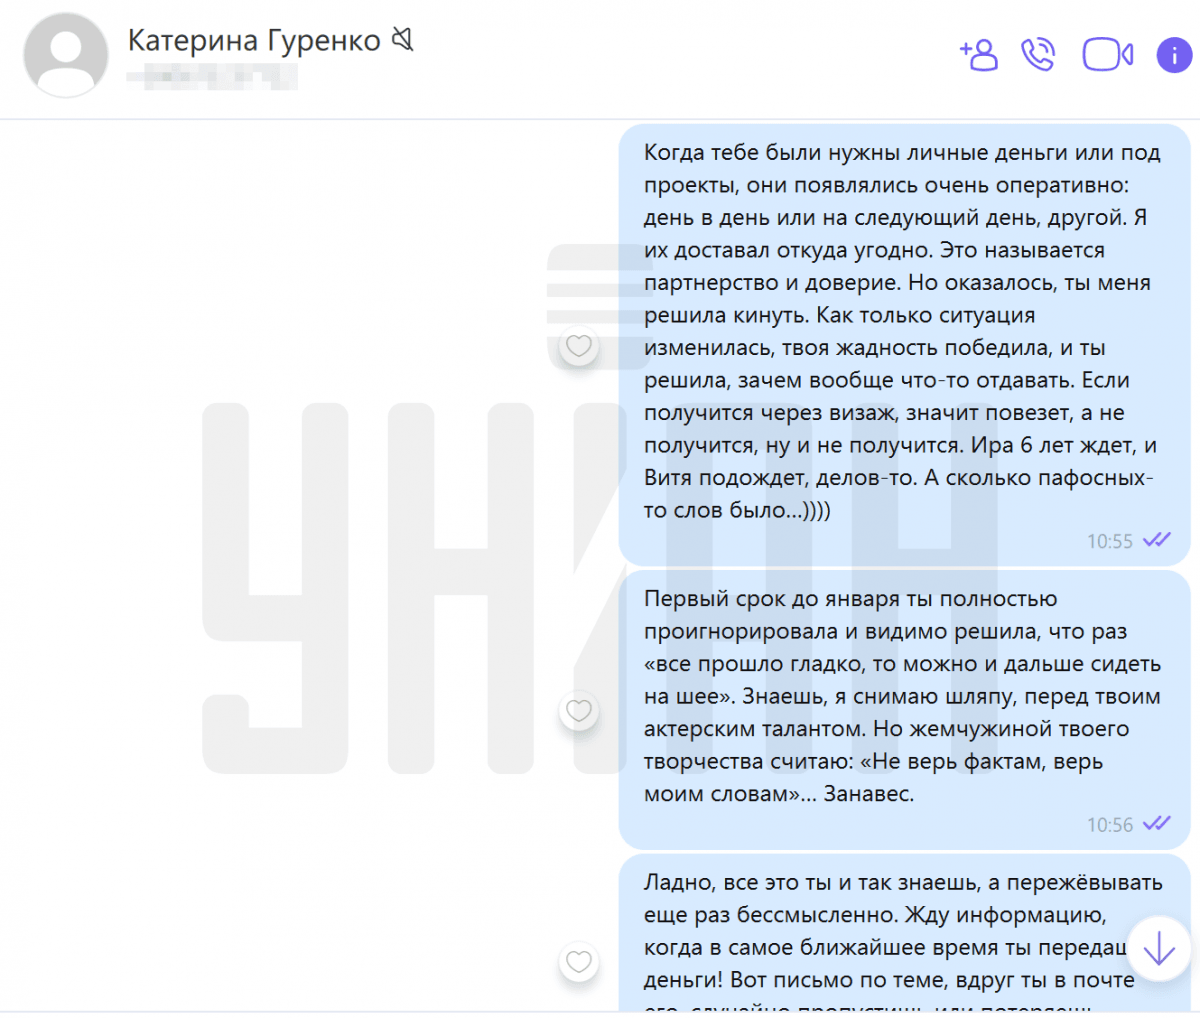 Переписка Віктора Гуржія з Катериною Гуренко про заборгованість / Скріншот наданий Гуржієм